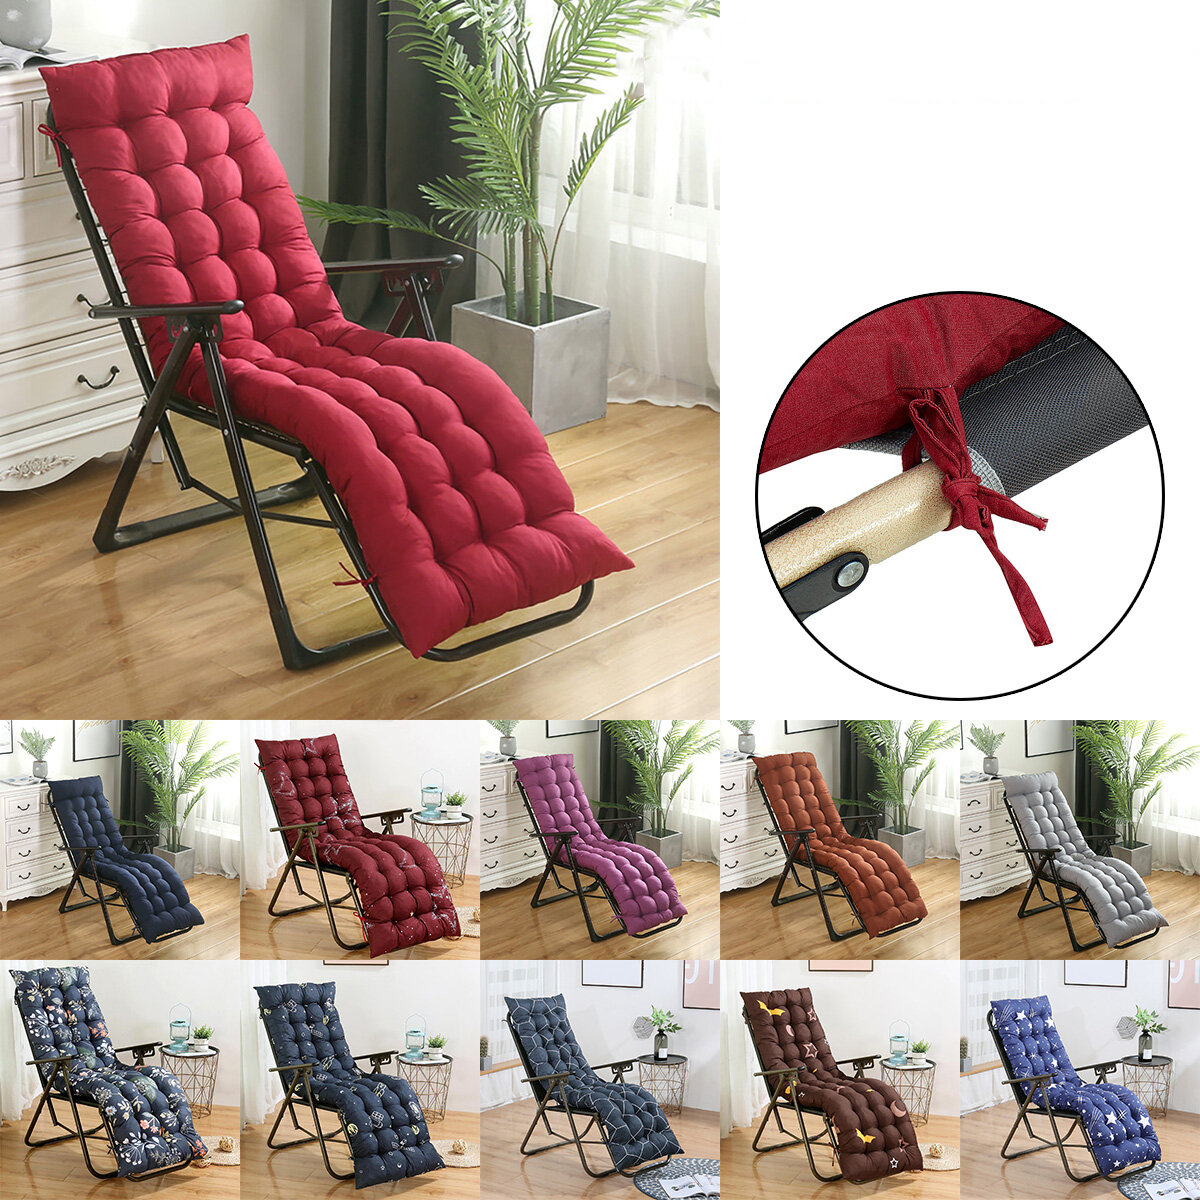 Universal Lounge Chaise Chair Kissen getuftet Soft Comfort Deck Chaise High Back Cushion Outdoor Indoor Schaukelstuhl gepolstert